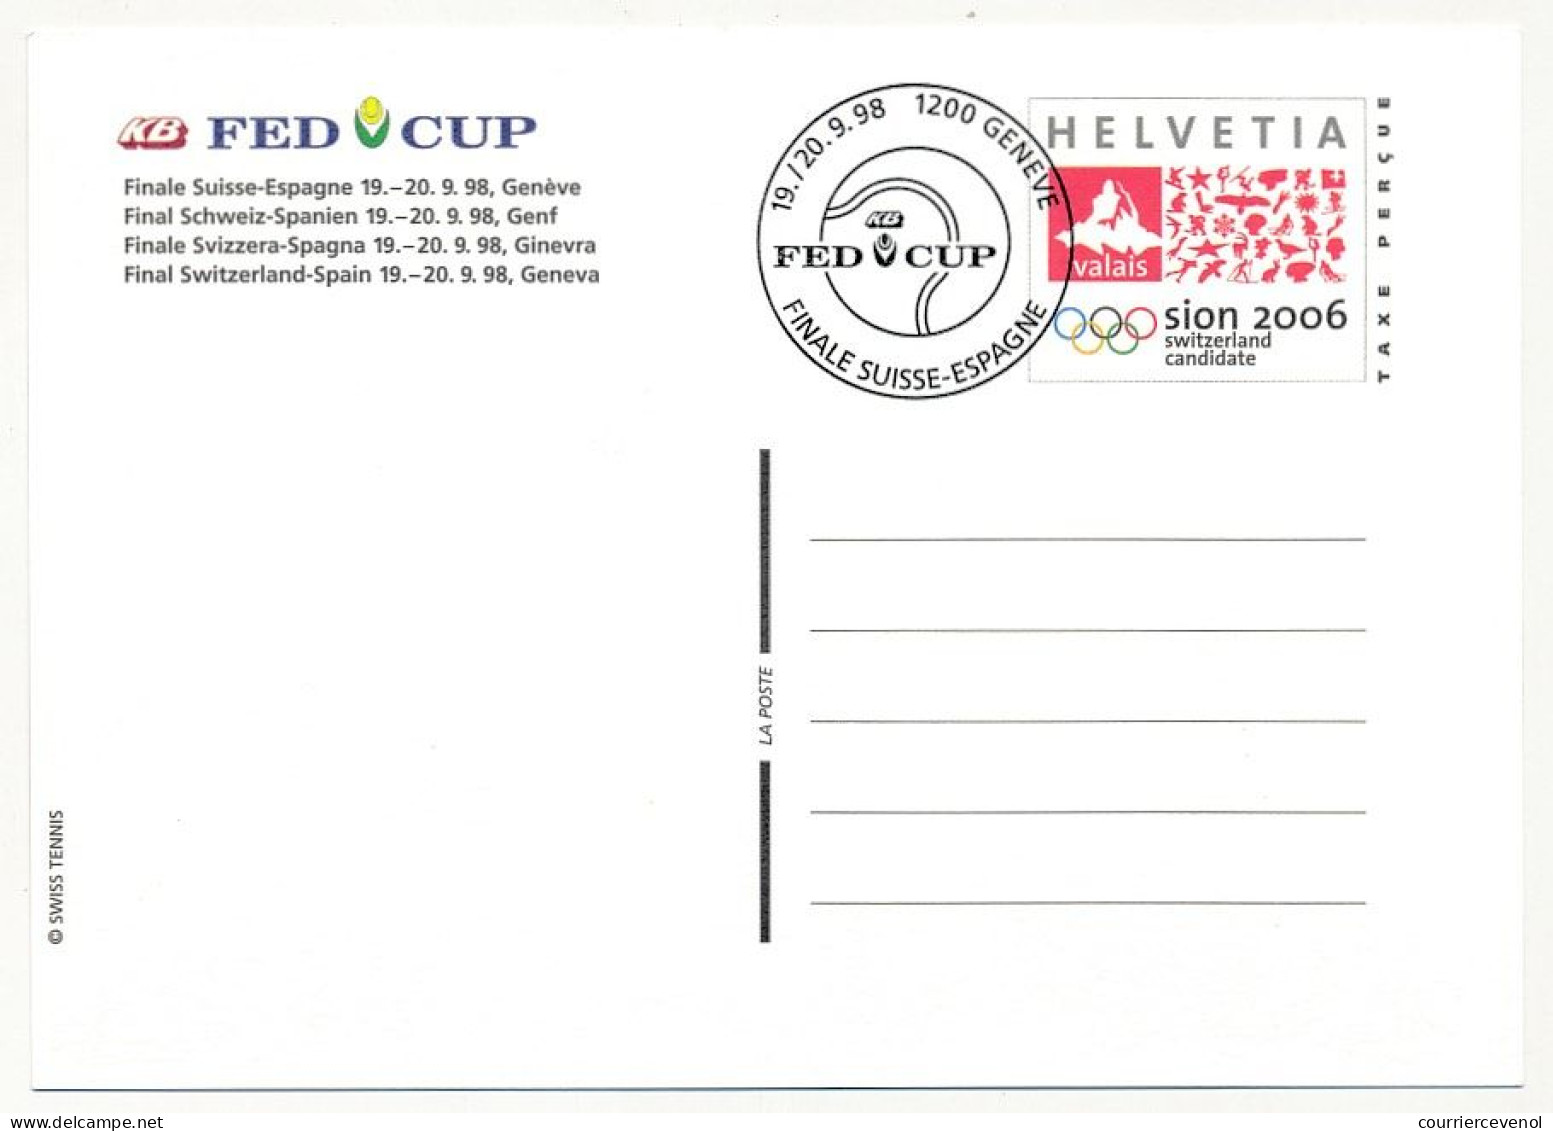 SUISSE => 8 Entiers postaux (CP) => Candidature Sion pour JO. FED CUP - 2 obl Demi finale Suisse France, 2 obl finale +